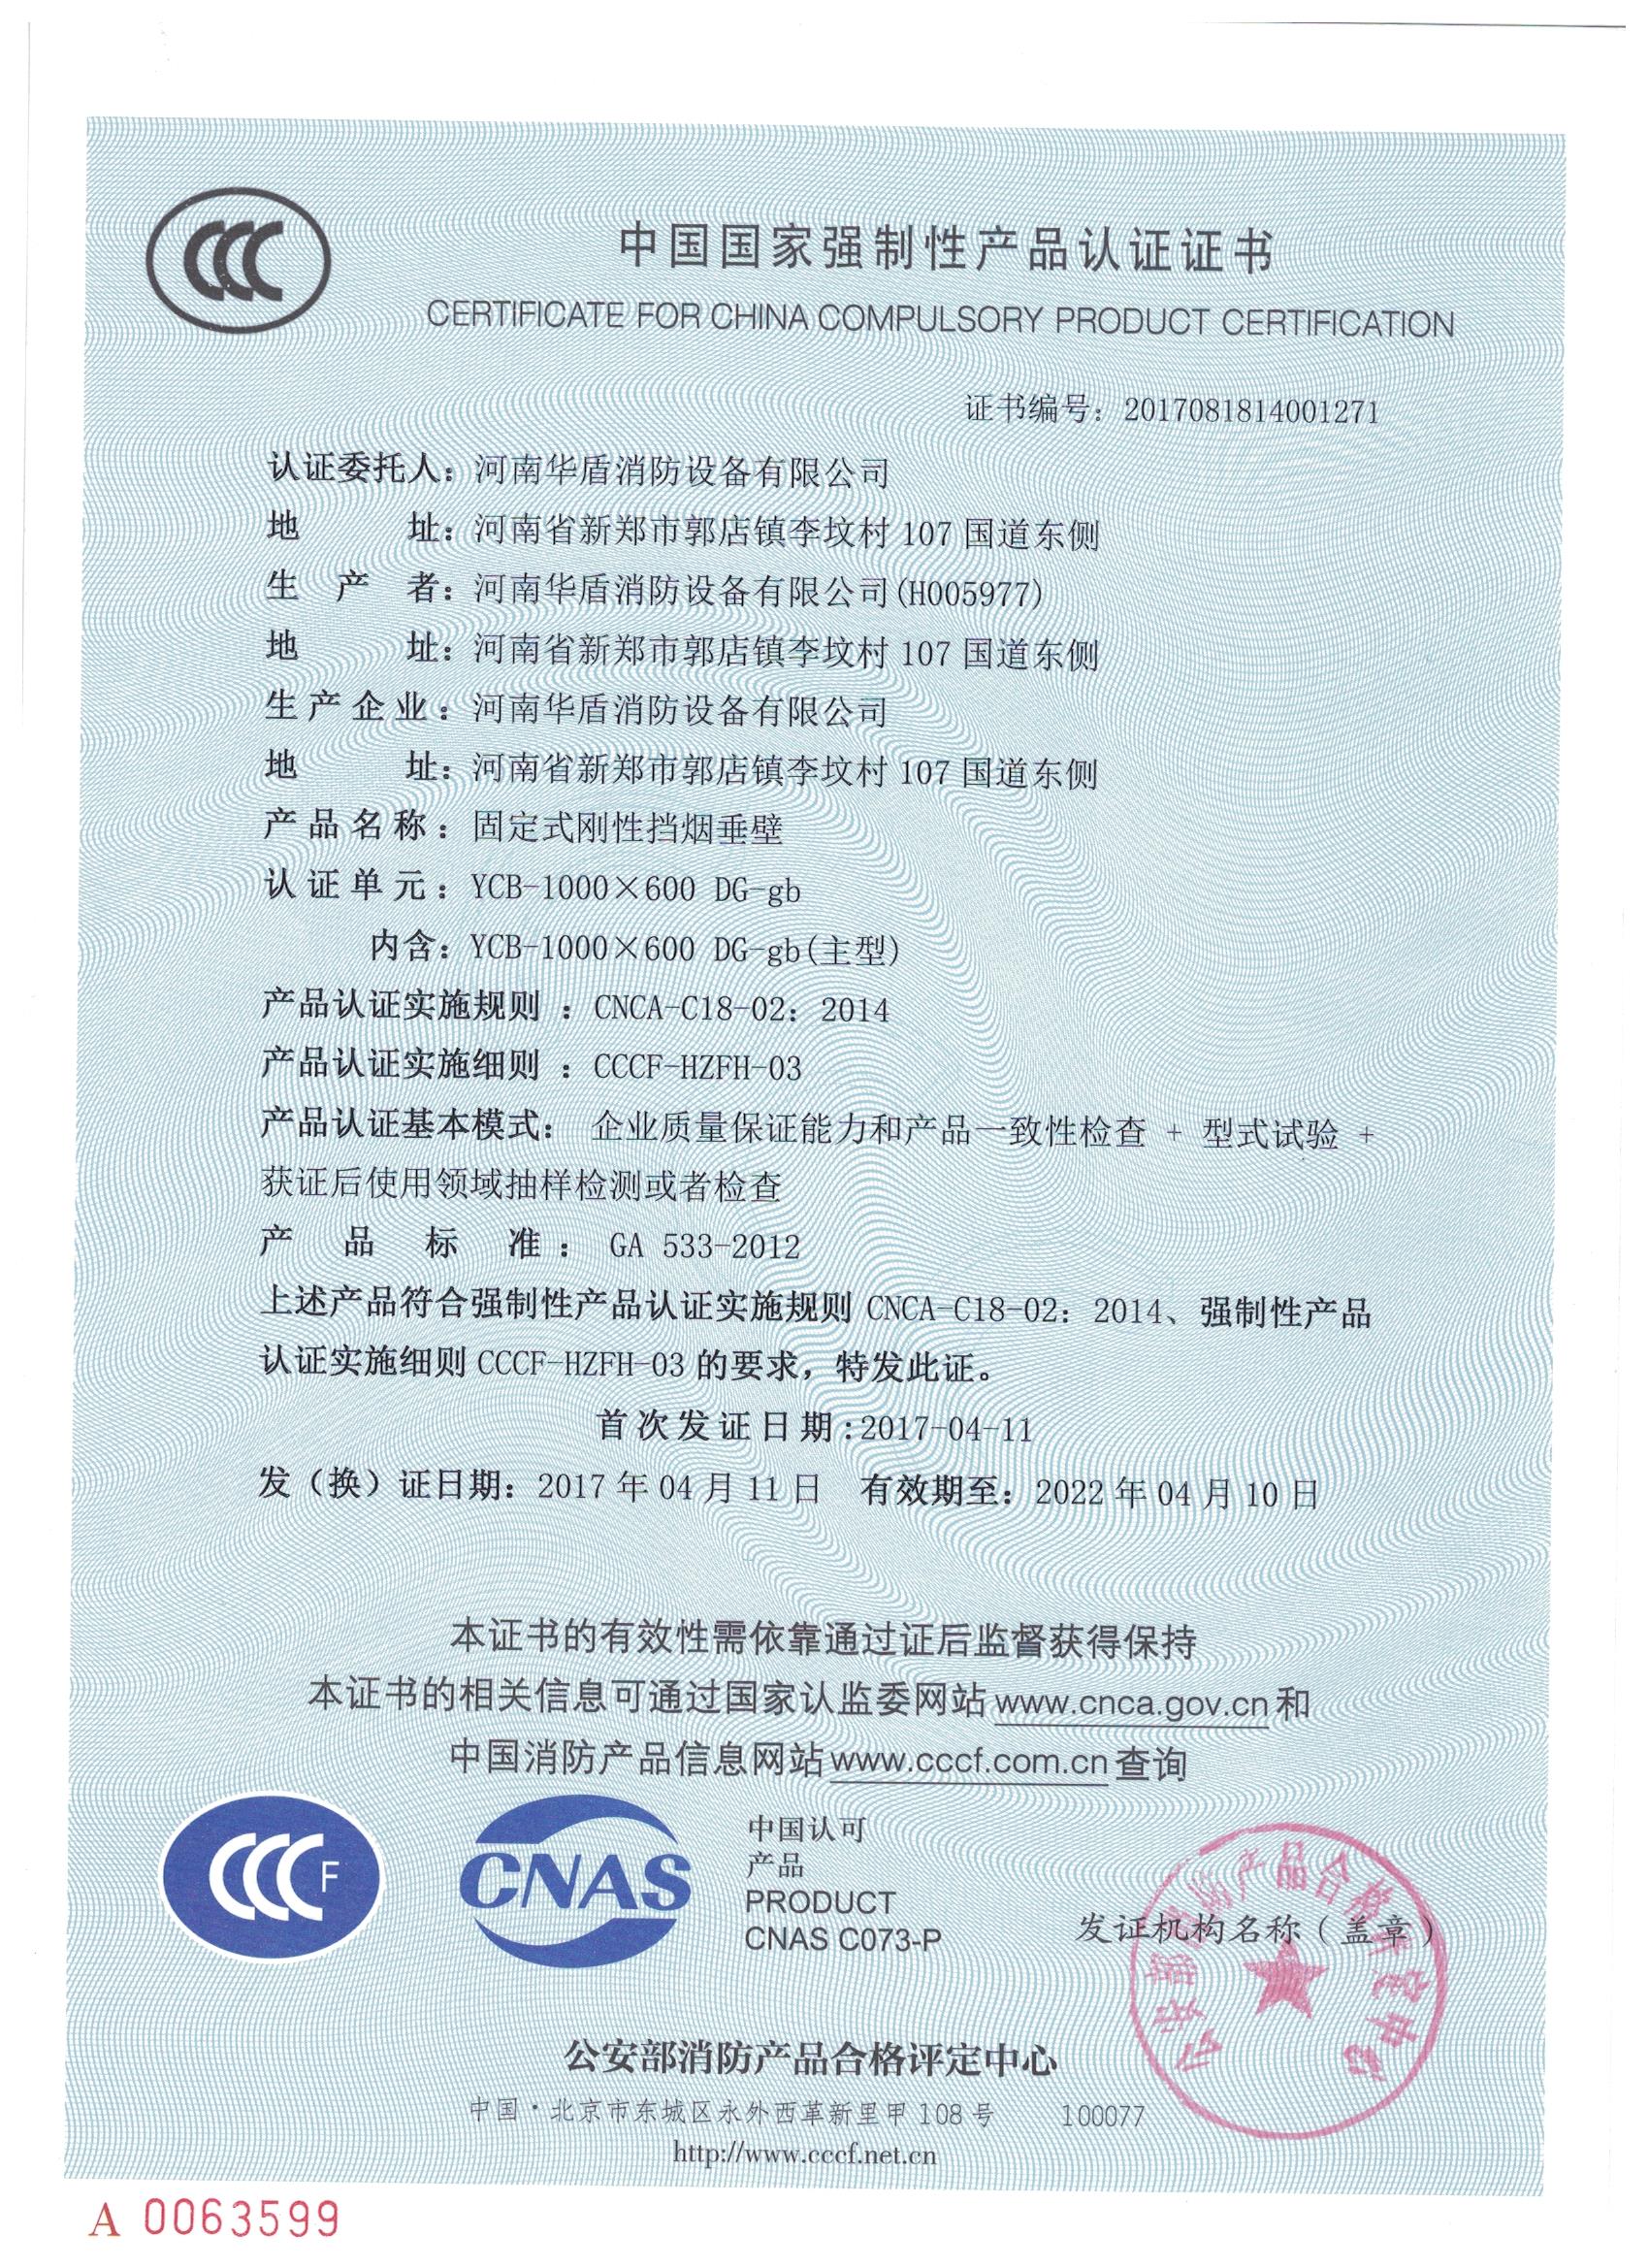 郑州YCB-1000X600 DG-gd-3C证书/检验报告